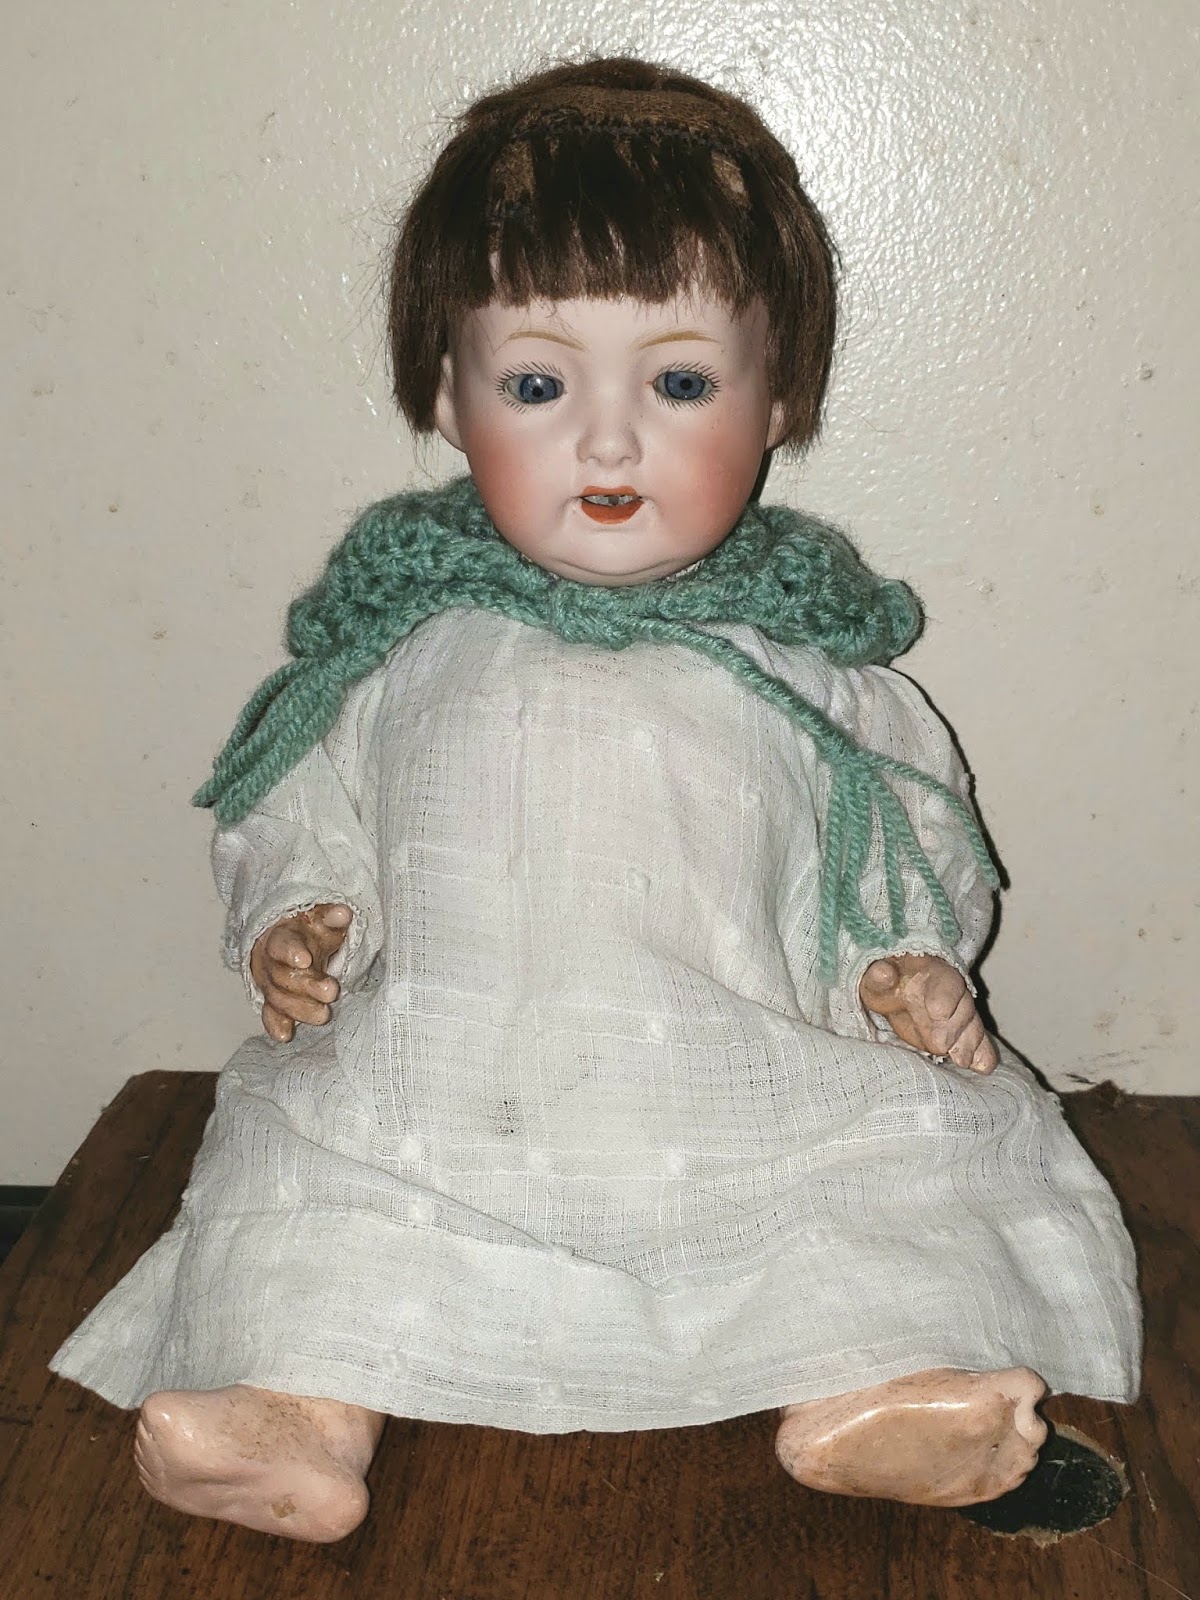 Vintage Japan Bisque Doll Baby Doll Porcelain Doll 